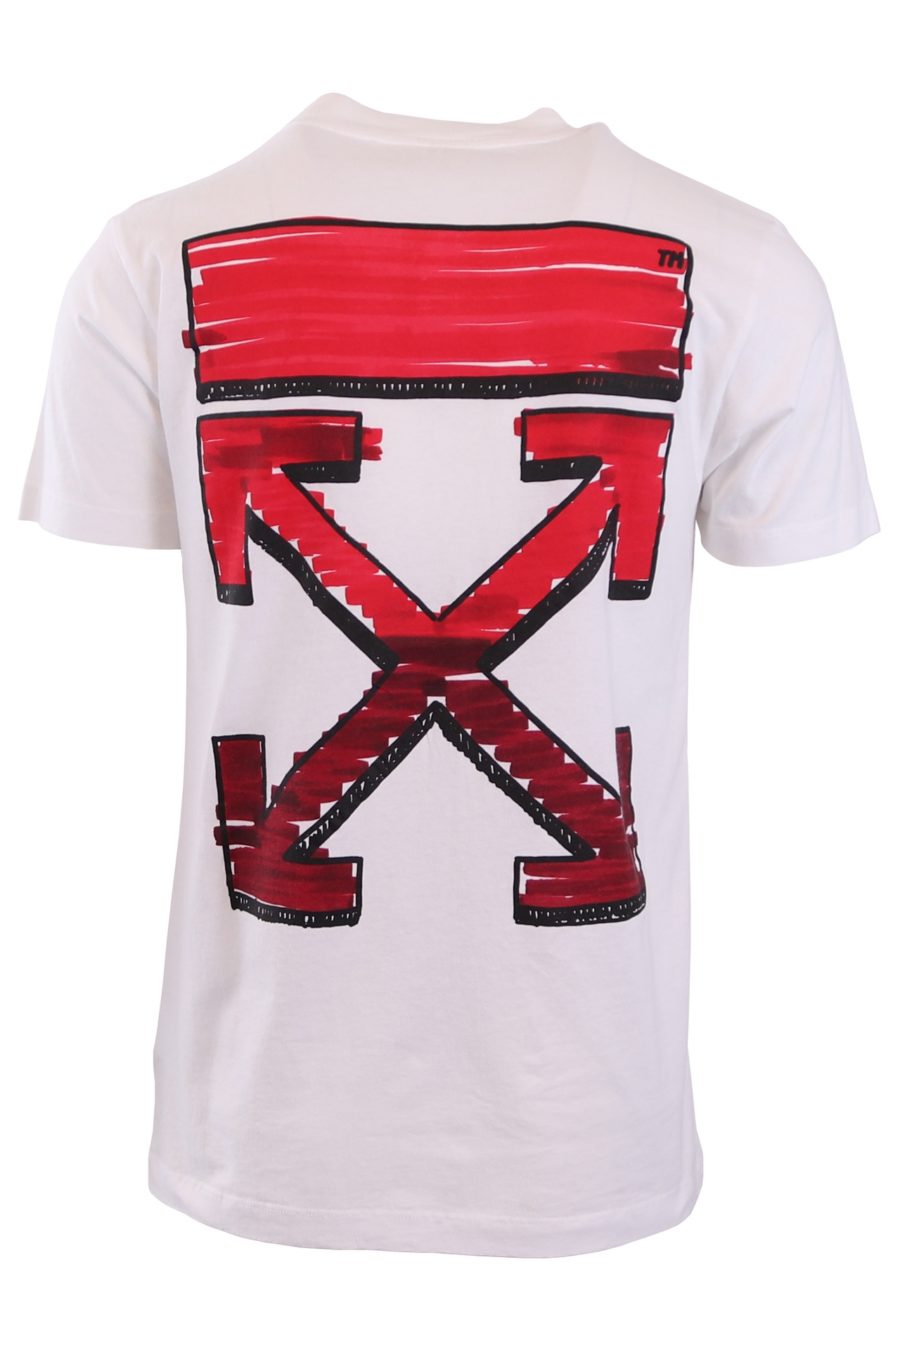 T-shirt Off-White branca com setas vermelhas - d4cad3946bec5e0140592f51109232e91ce06430